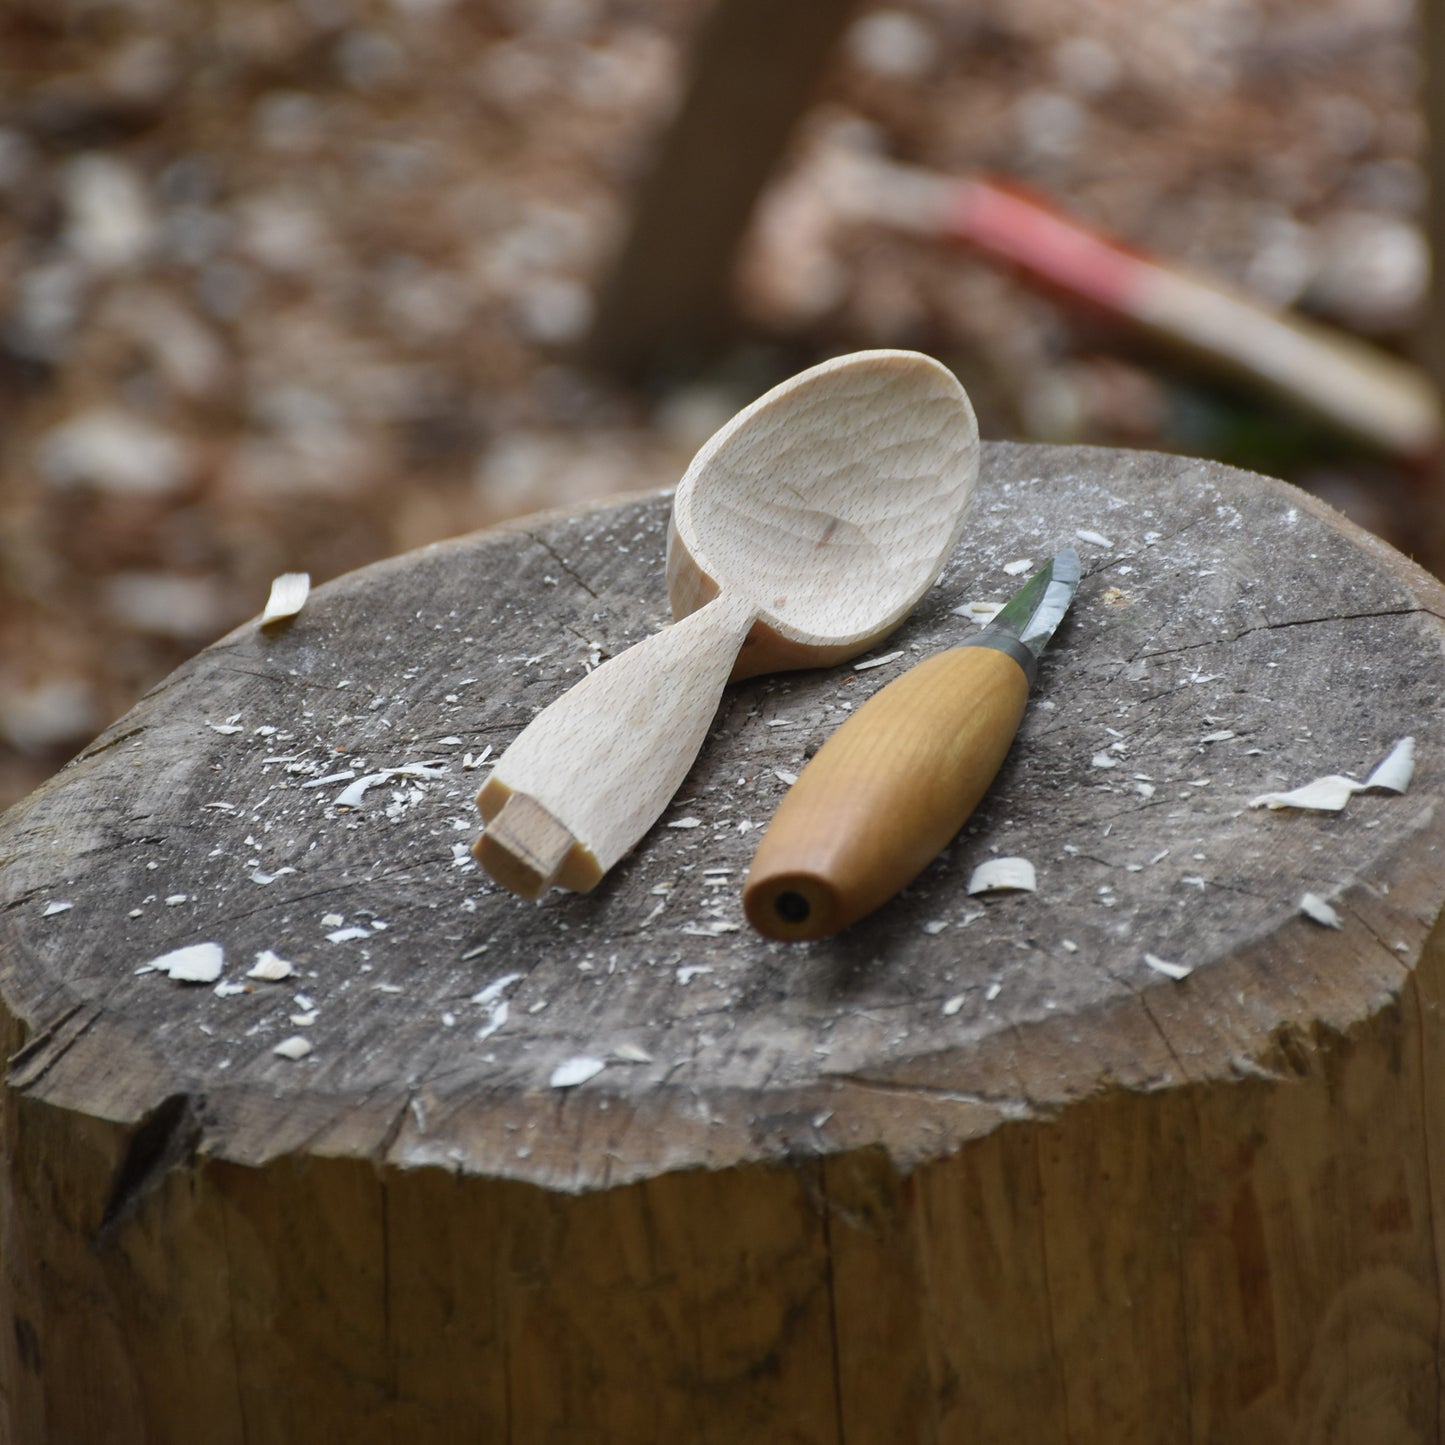 Spoon Carving Workshop - 05.02.2023